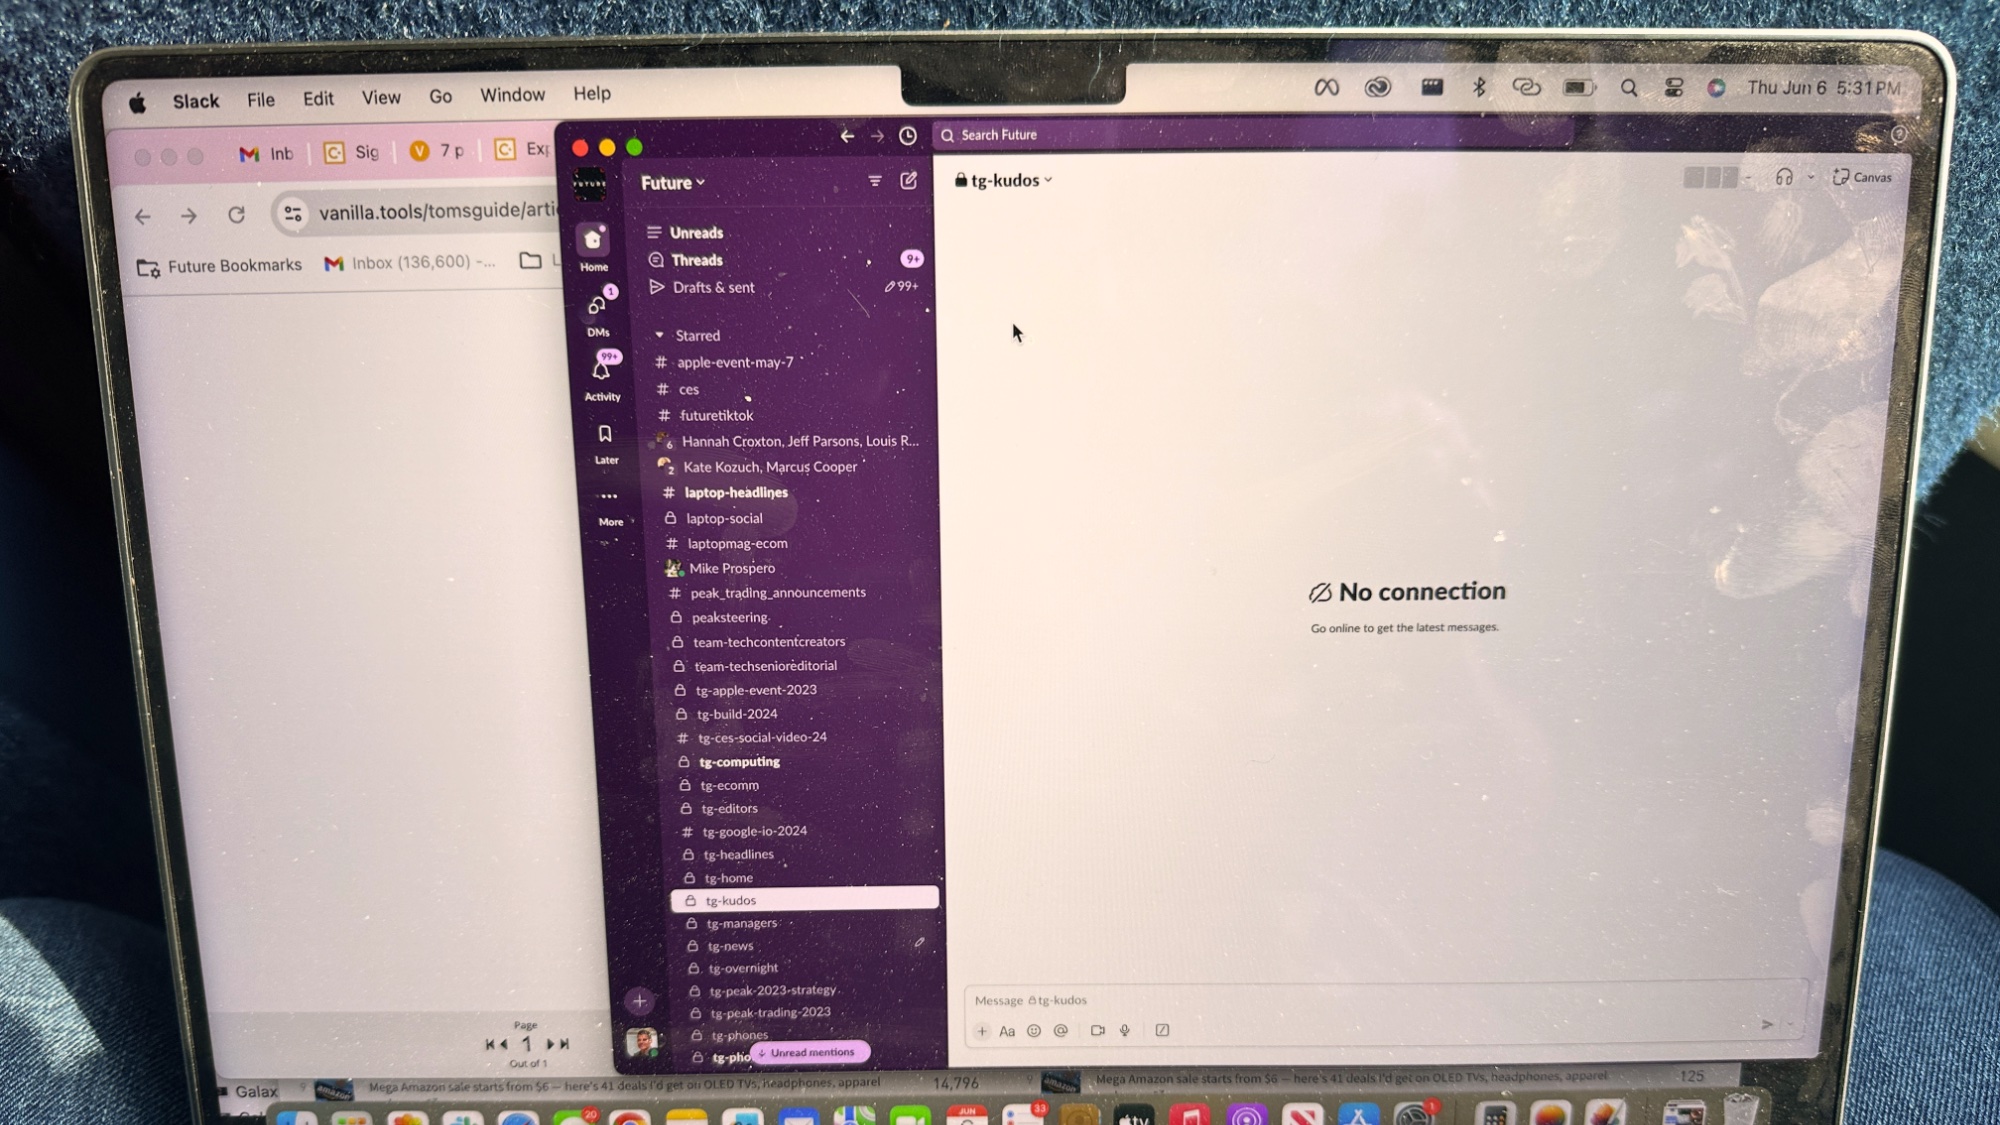 Geen verbinding bericht op Slack op MacBook Pro als gevolg van slecht T-Mobile signaal